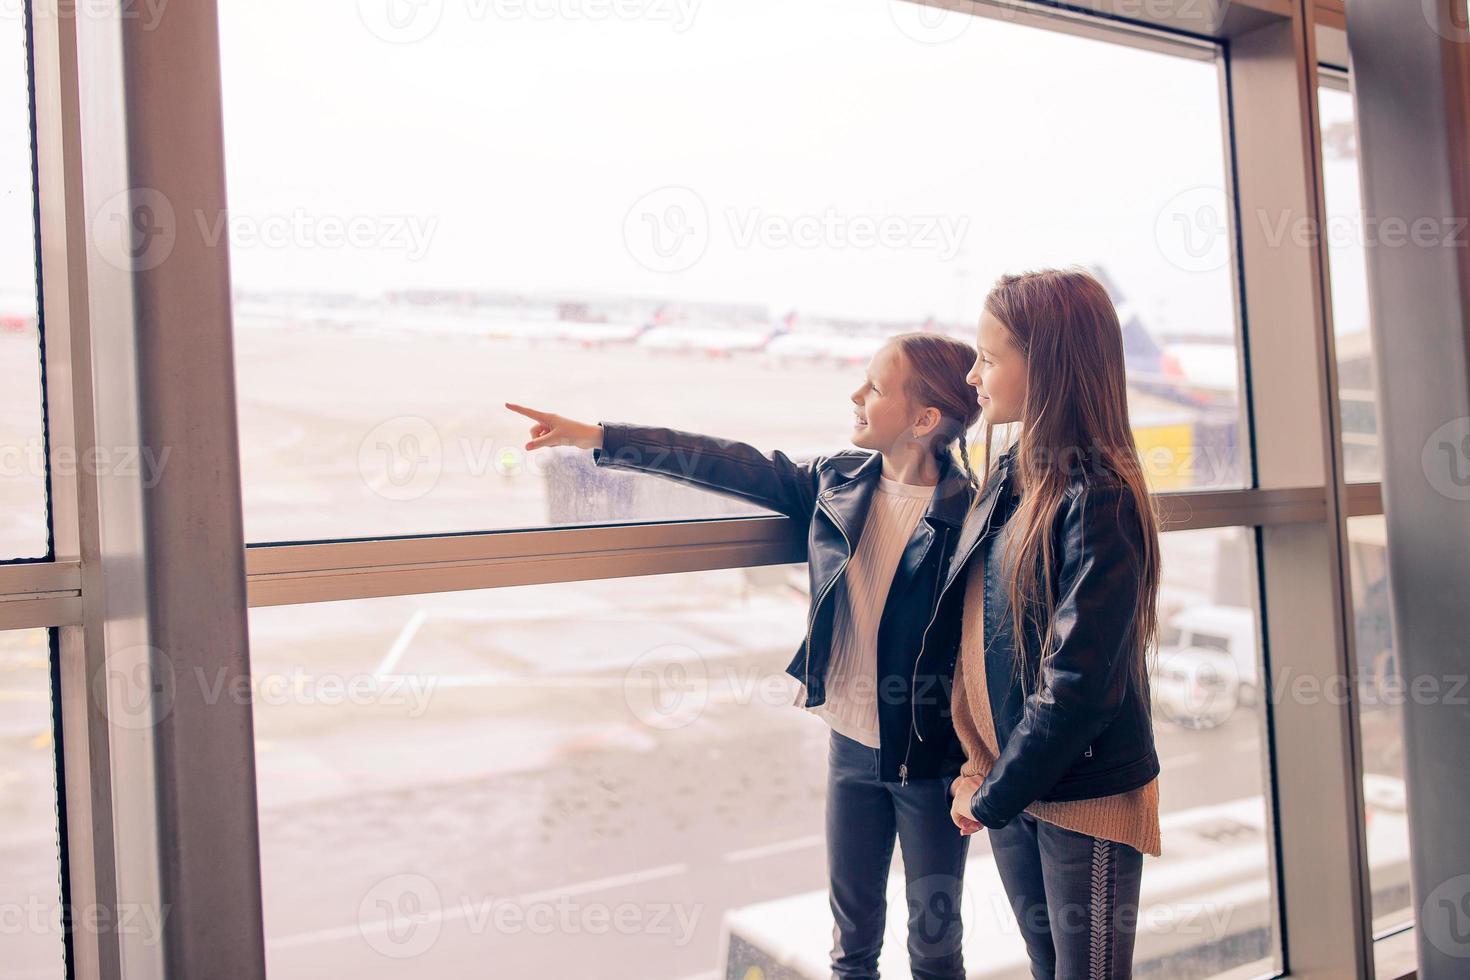 petit enfant à l'aéroport en attente d'embarquement photo